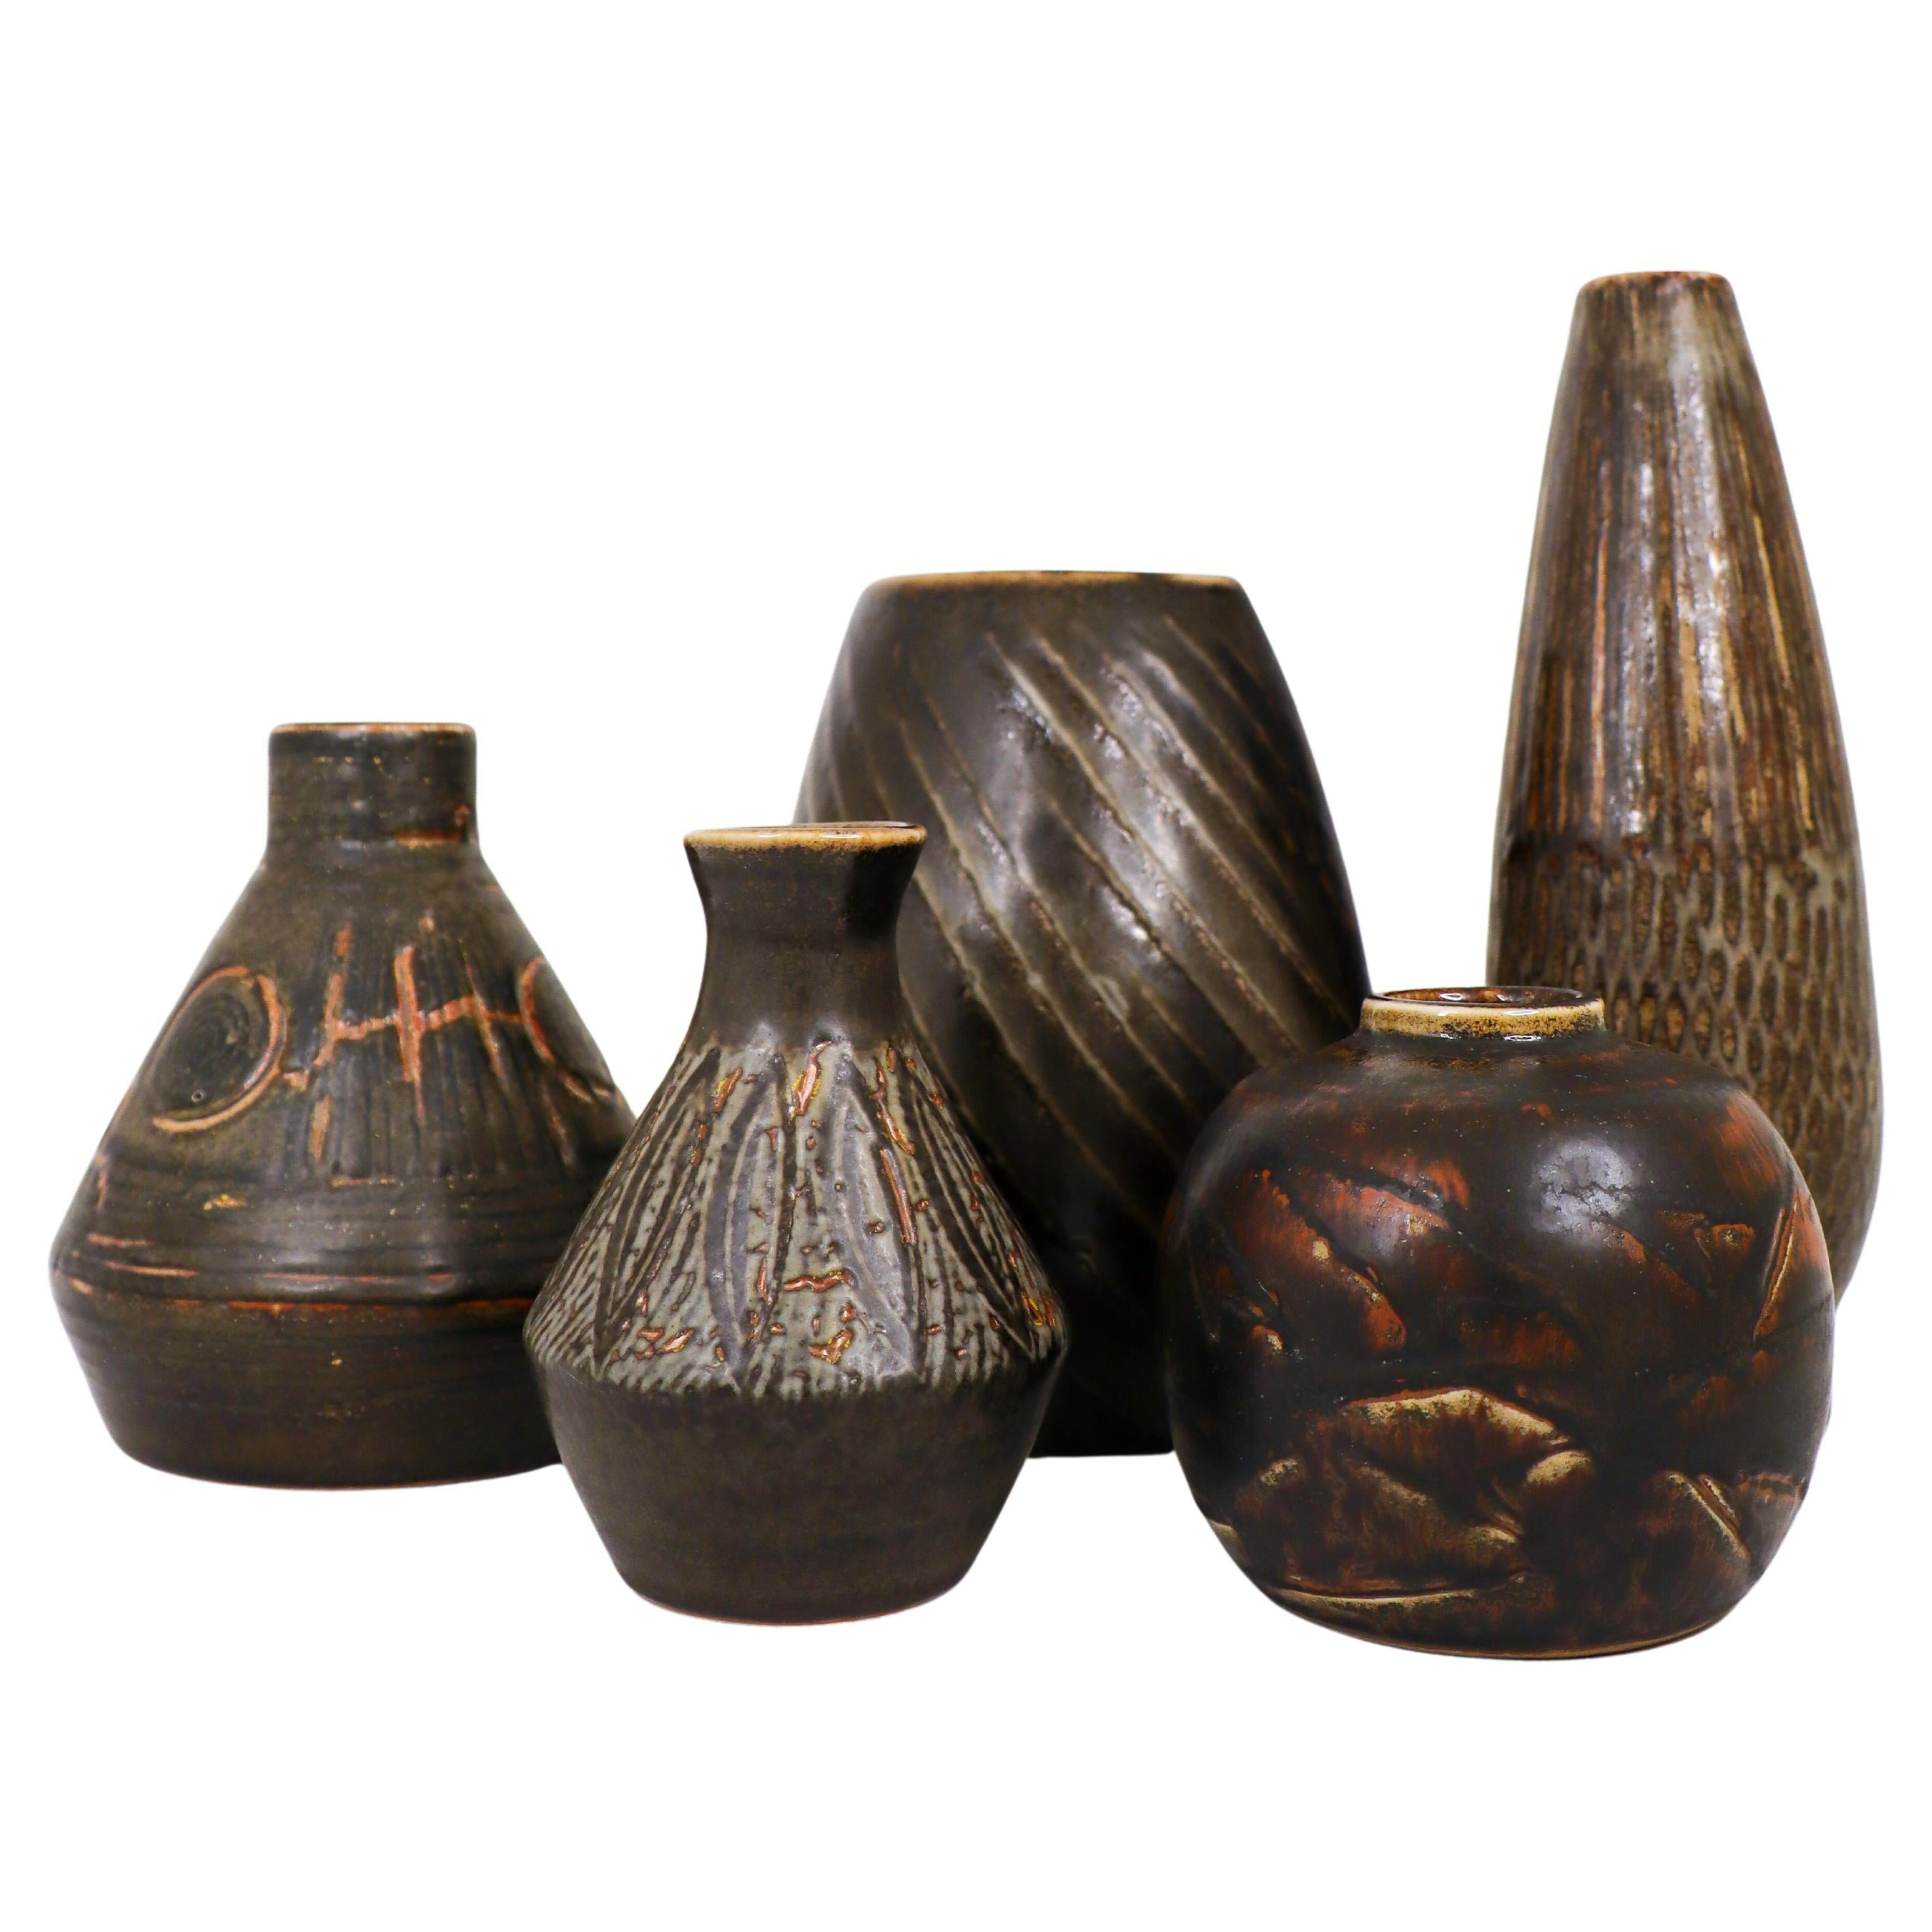 Gruppe von 5 braunen Vasen Keramik, Rörstrand - Carl-Harry Stålhane